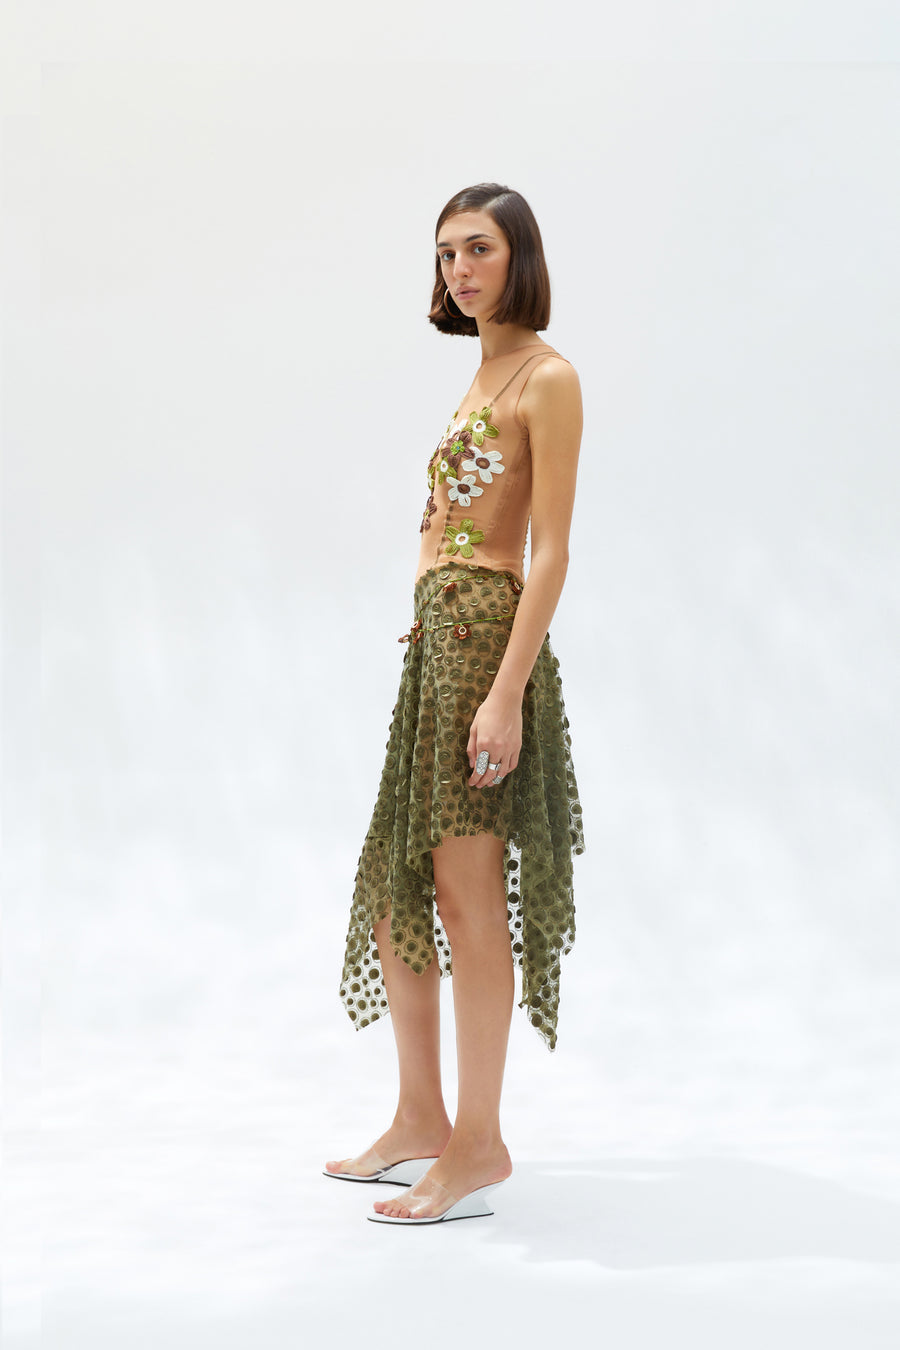 OVI - Handkerchief dress with crochet flower details